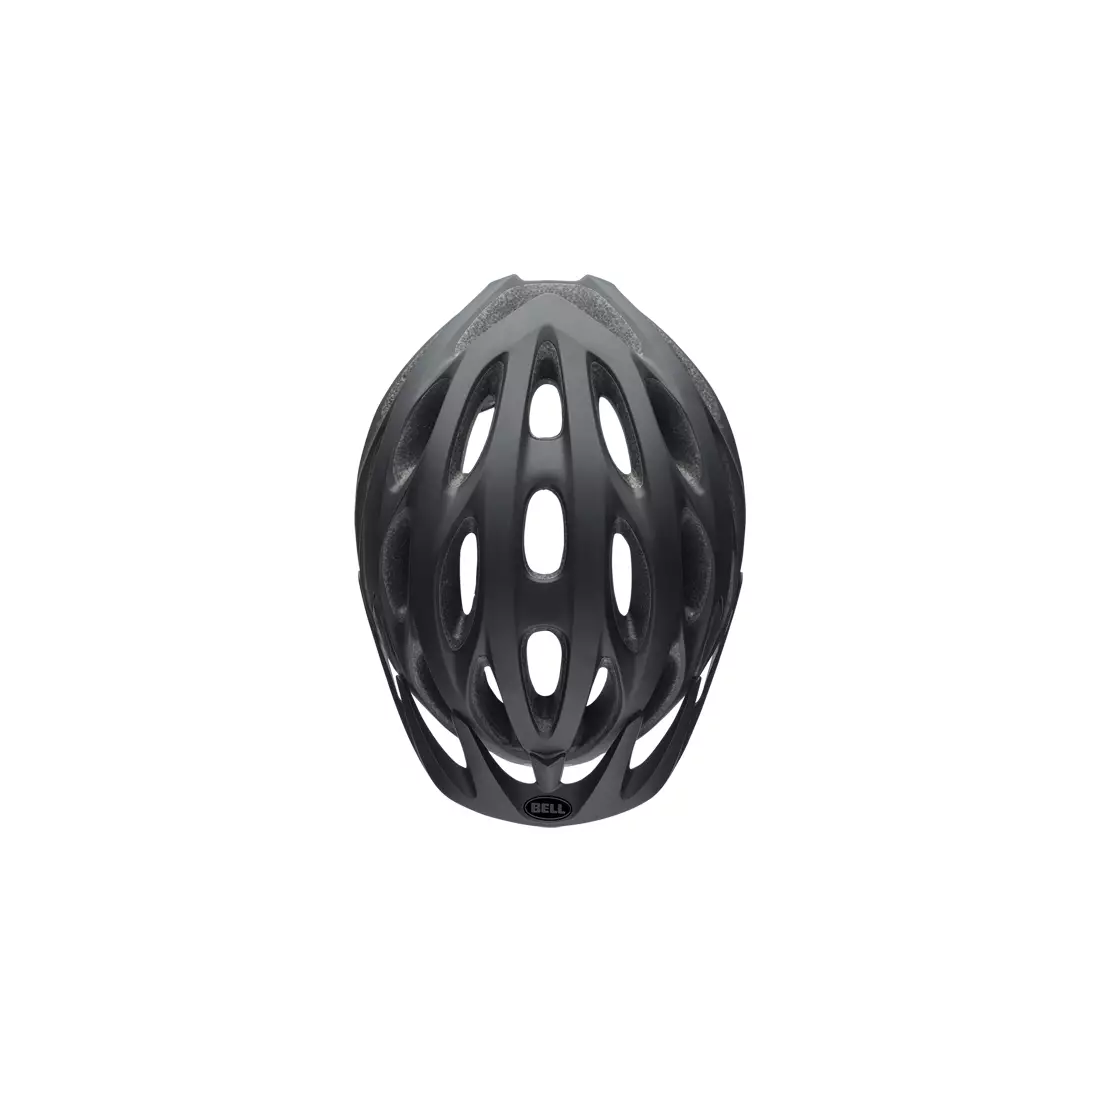 BELL TRACKER - BEL-7082027 - bicycle helmet black